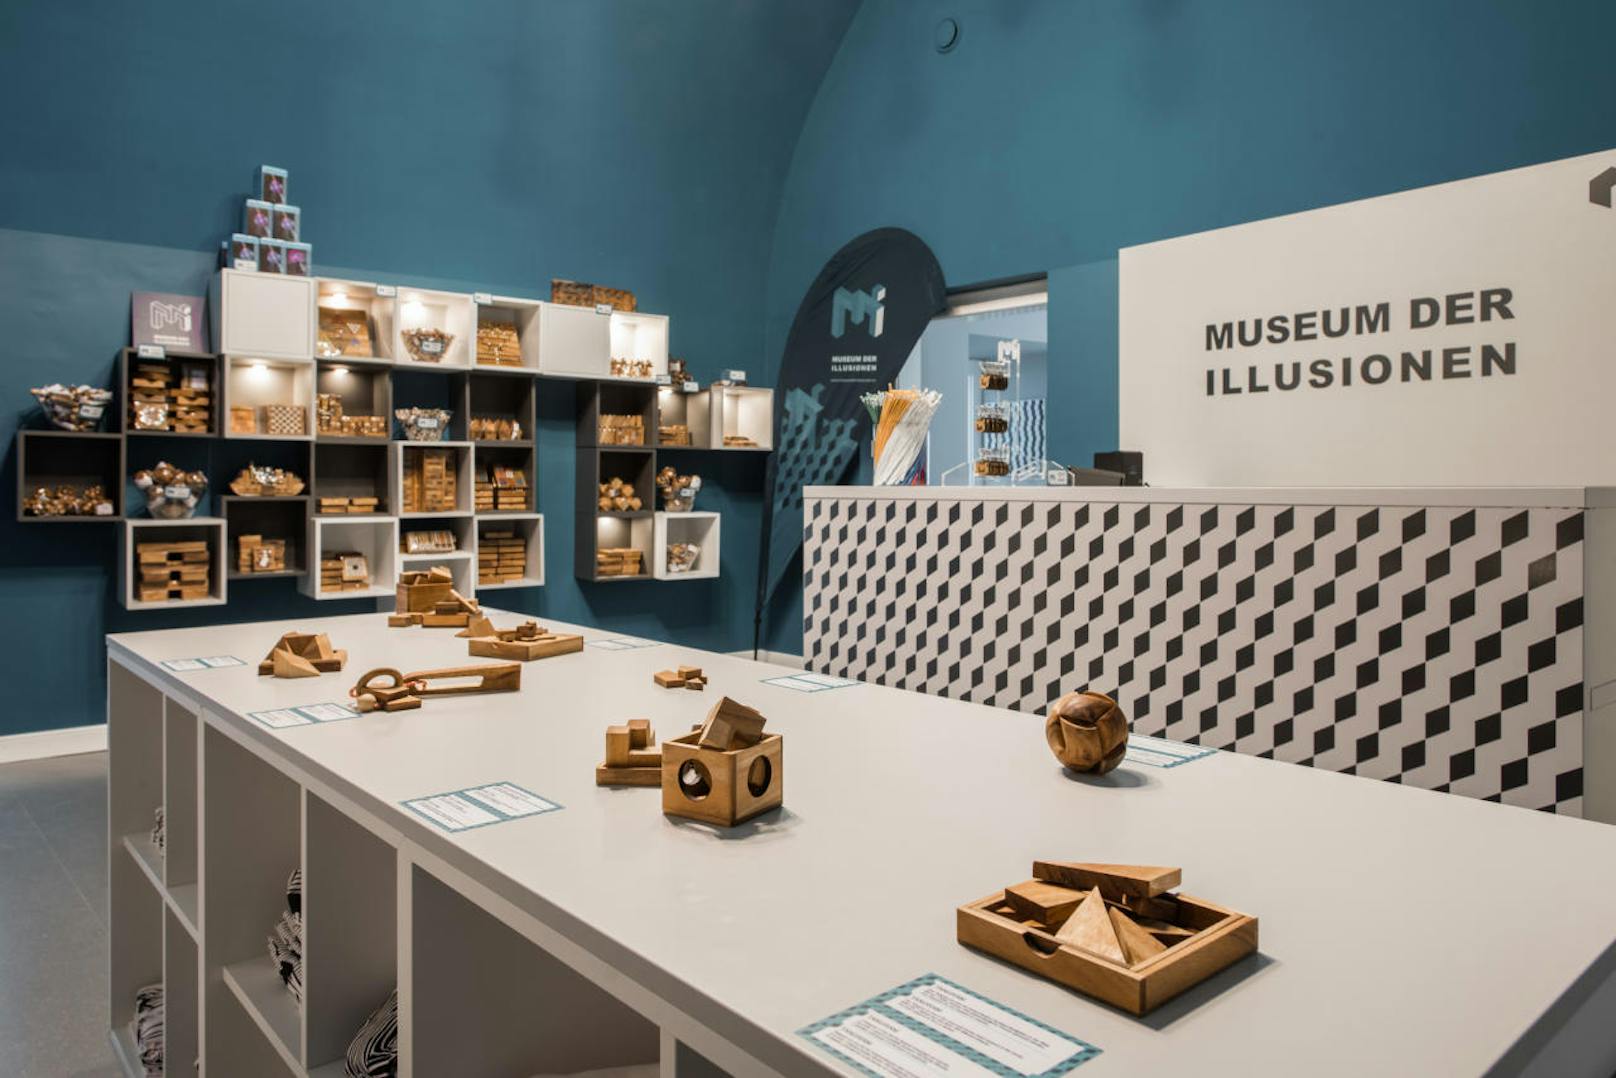 Mit über 70 Ausstellungsstücken zeigt das Museum der Illusionen die größte Sammlung von Hollogrammen, Stereogrammen und optischen Illusionen in Österreich.